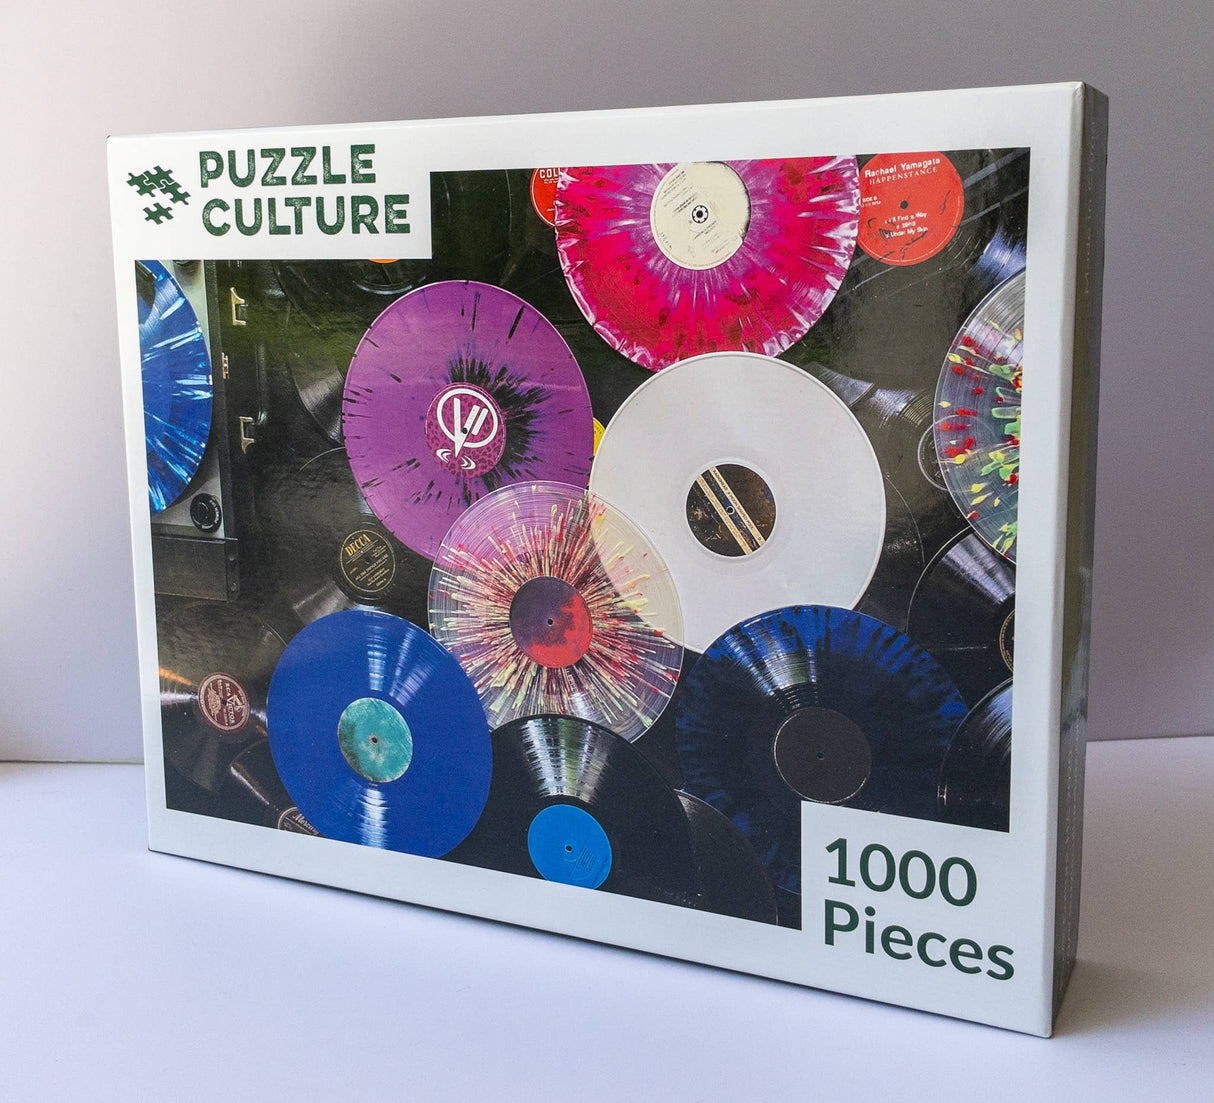 Puzzle Culture puzzles of 1000 pieces called Vinyl Colors.